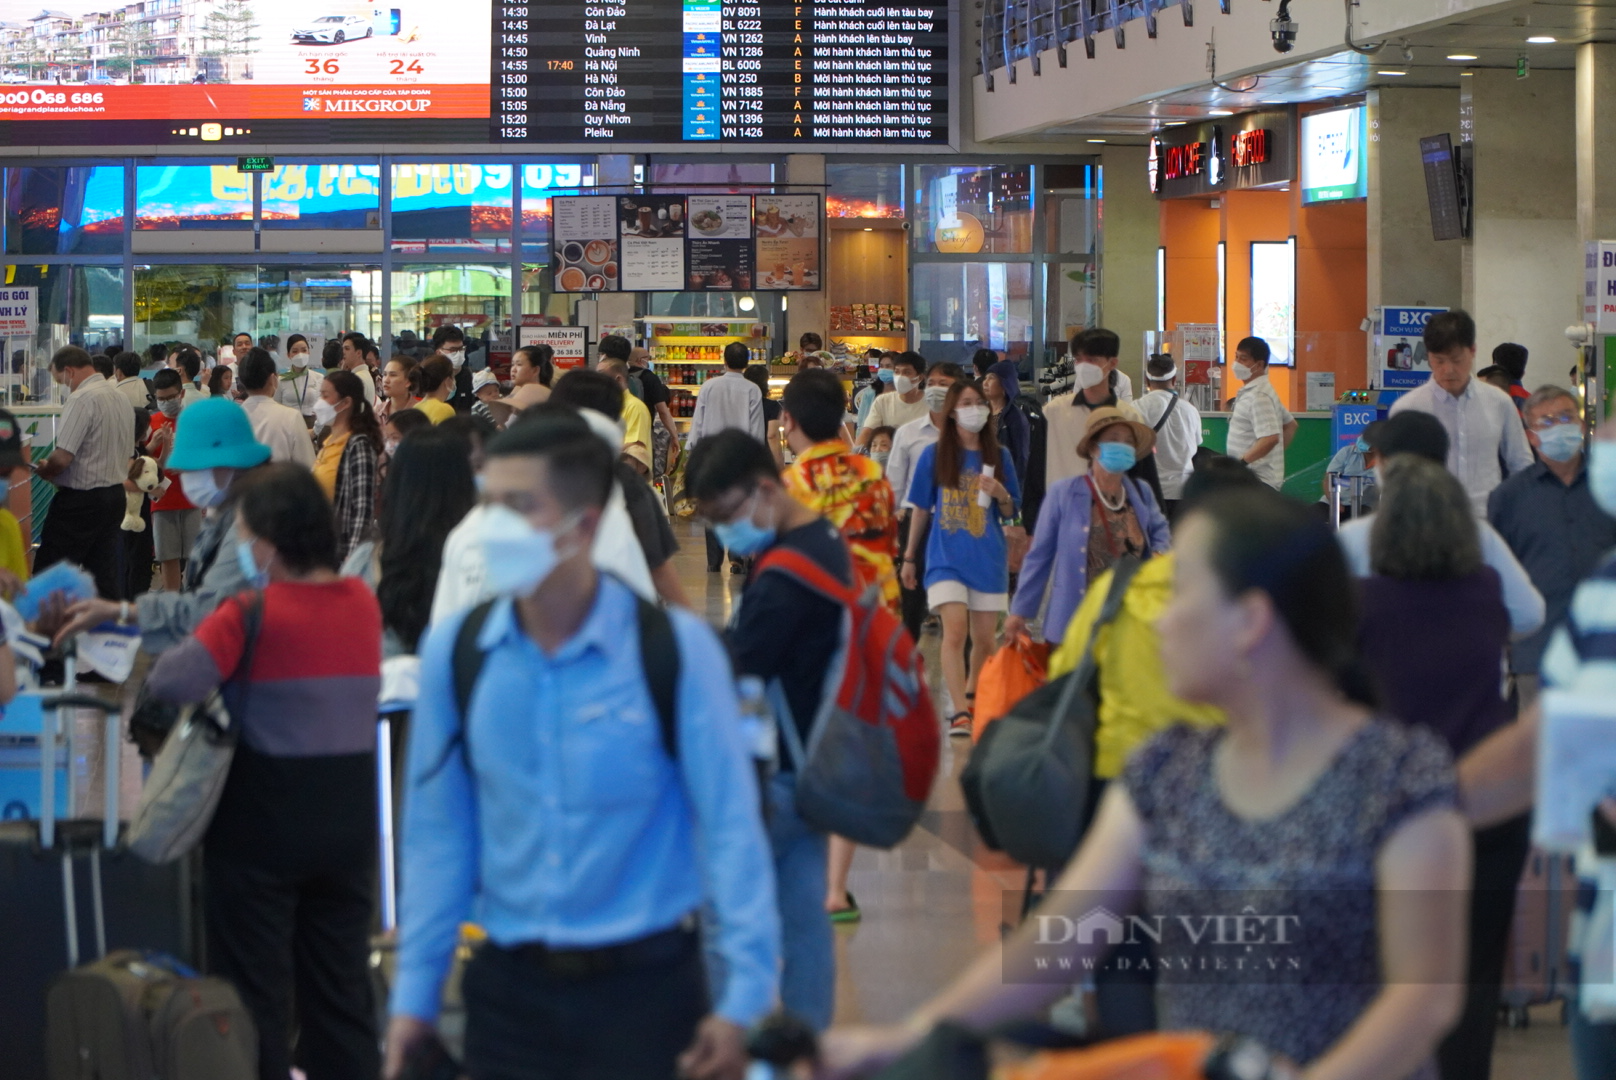 Hàng không nội địa tăng trưởng vượt dự báo, nhiều đường bay Tết đã kín chỗ - Ảnh 3.